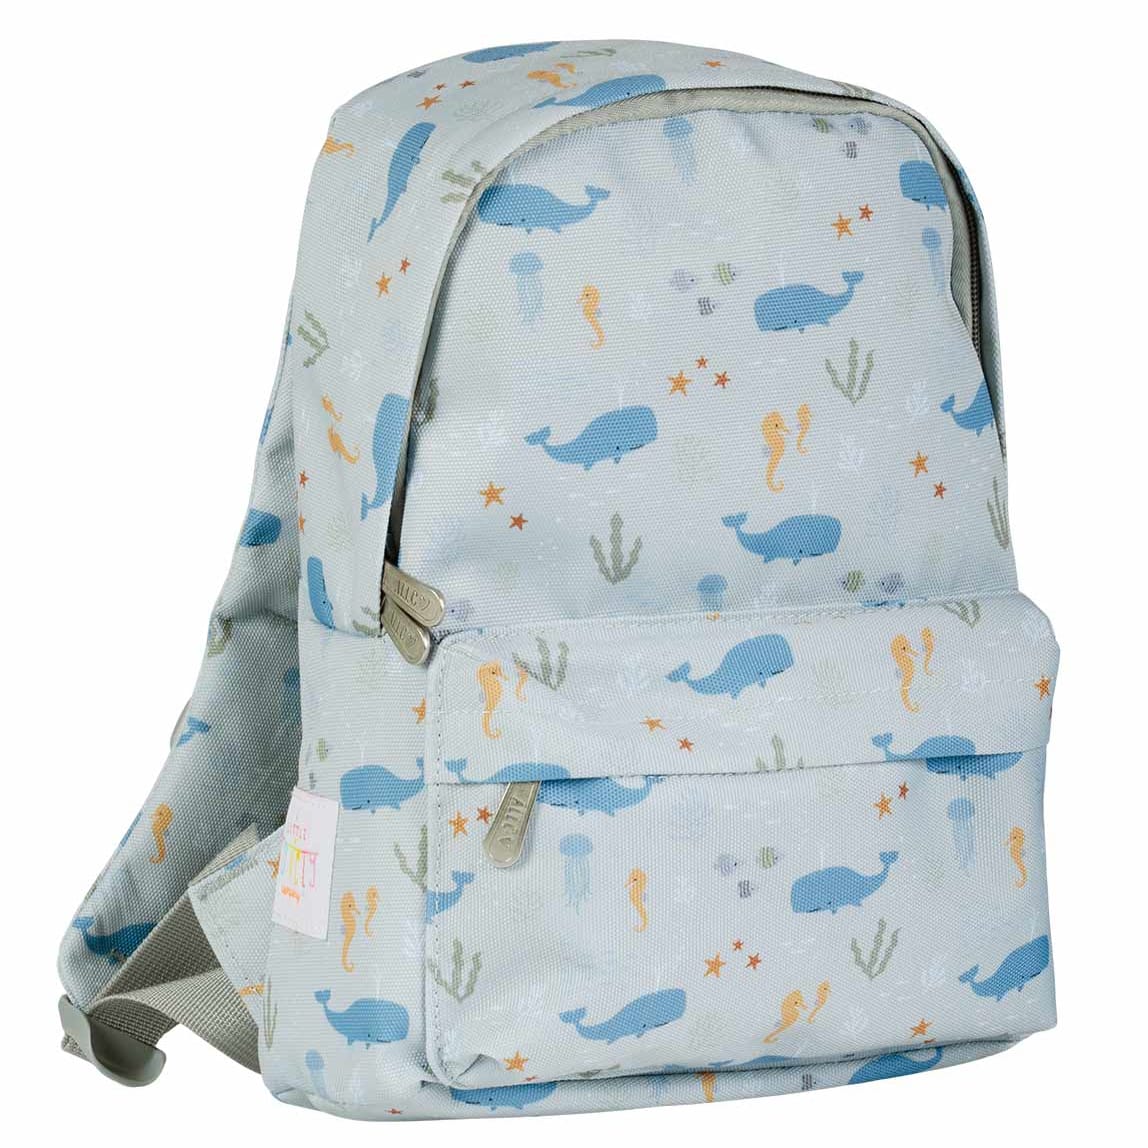 Little Backpack - Ocean